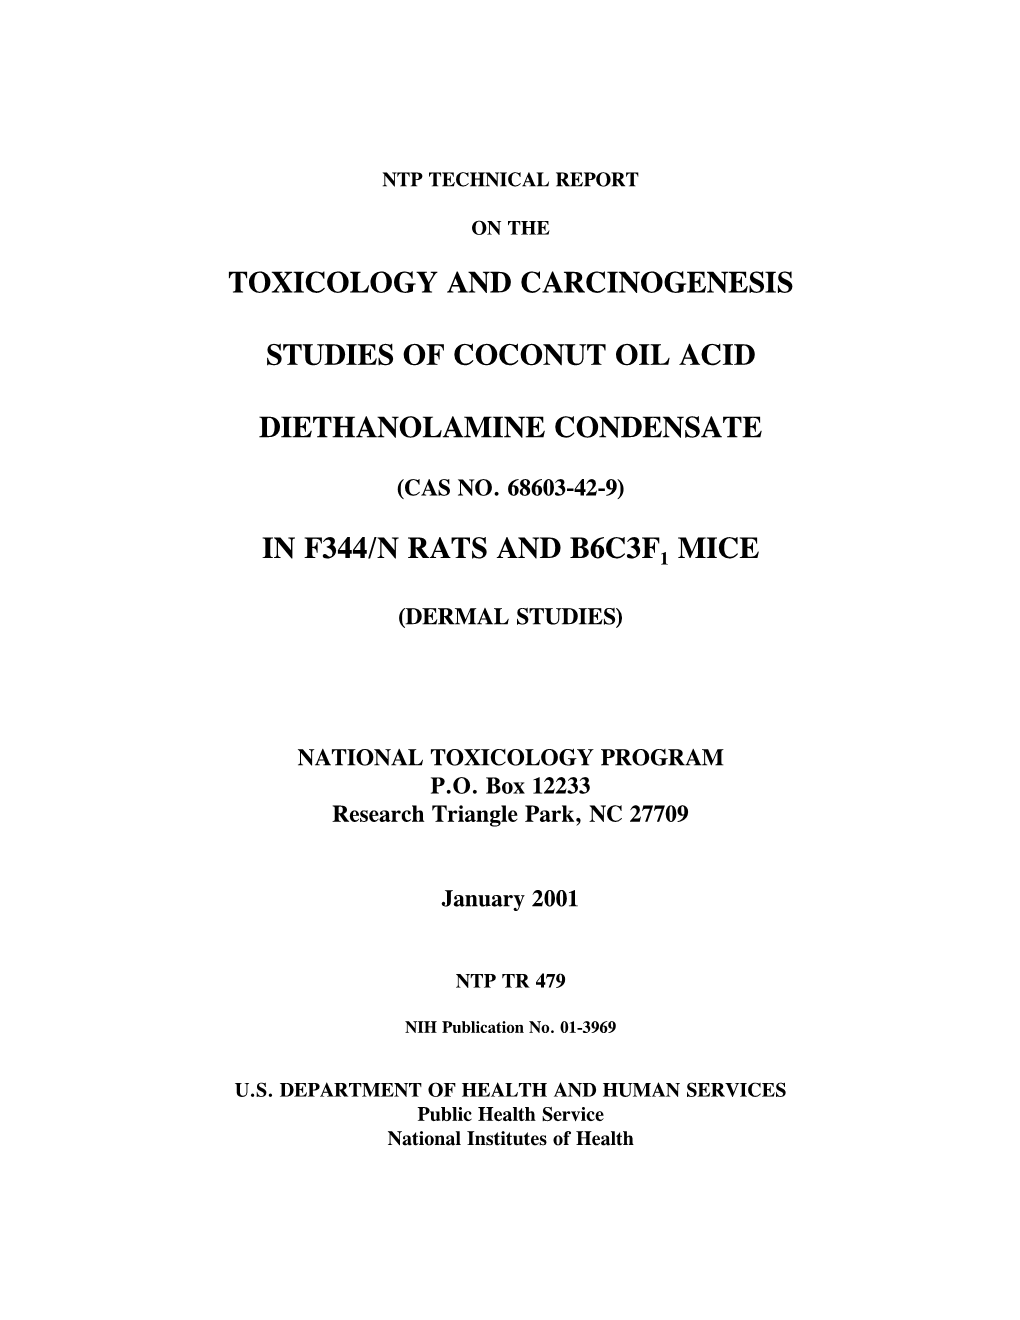 TR-479: Coconut Oil Acid Diethanolamine Condensate